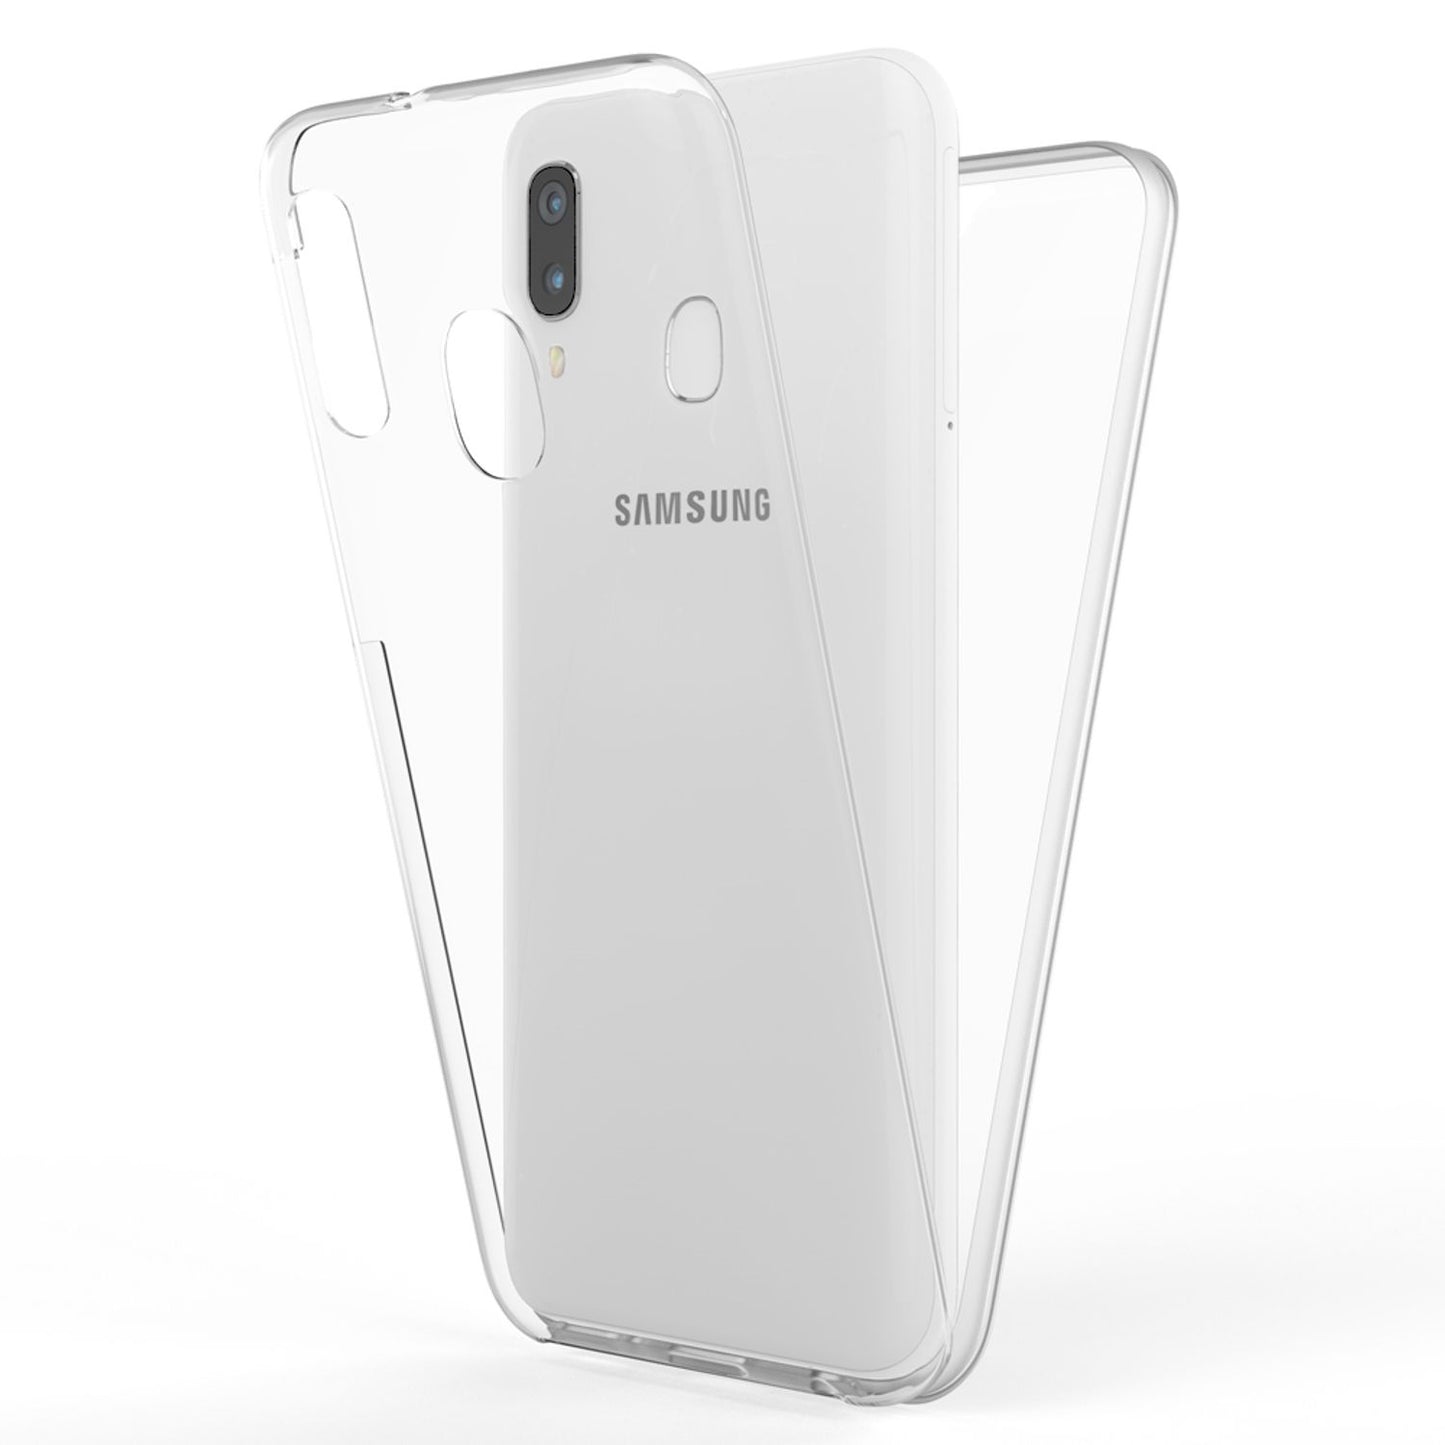 NALIA Handy Hülle für Samsung Galaxy A40, 360 Grad Slim Schutz Case Cover Tasche